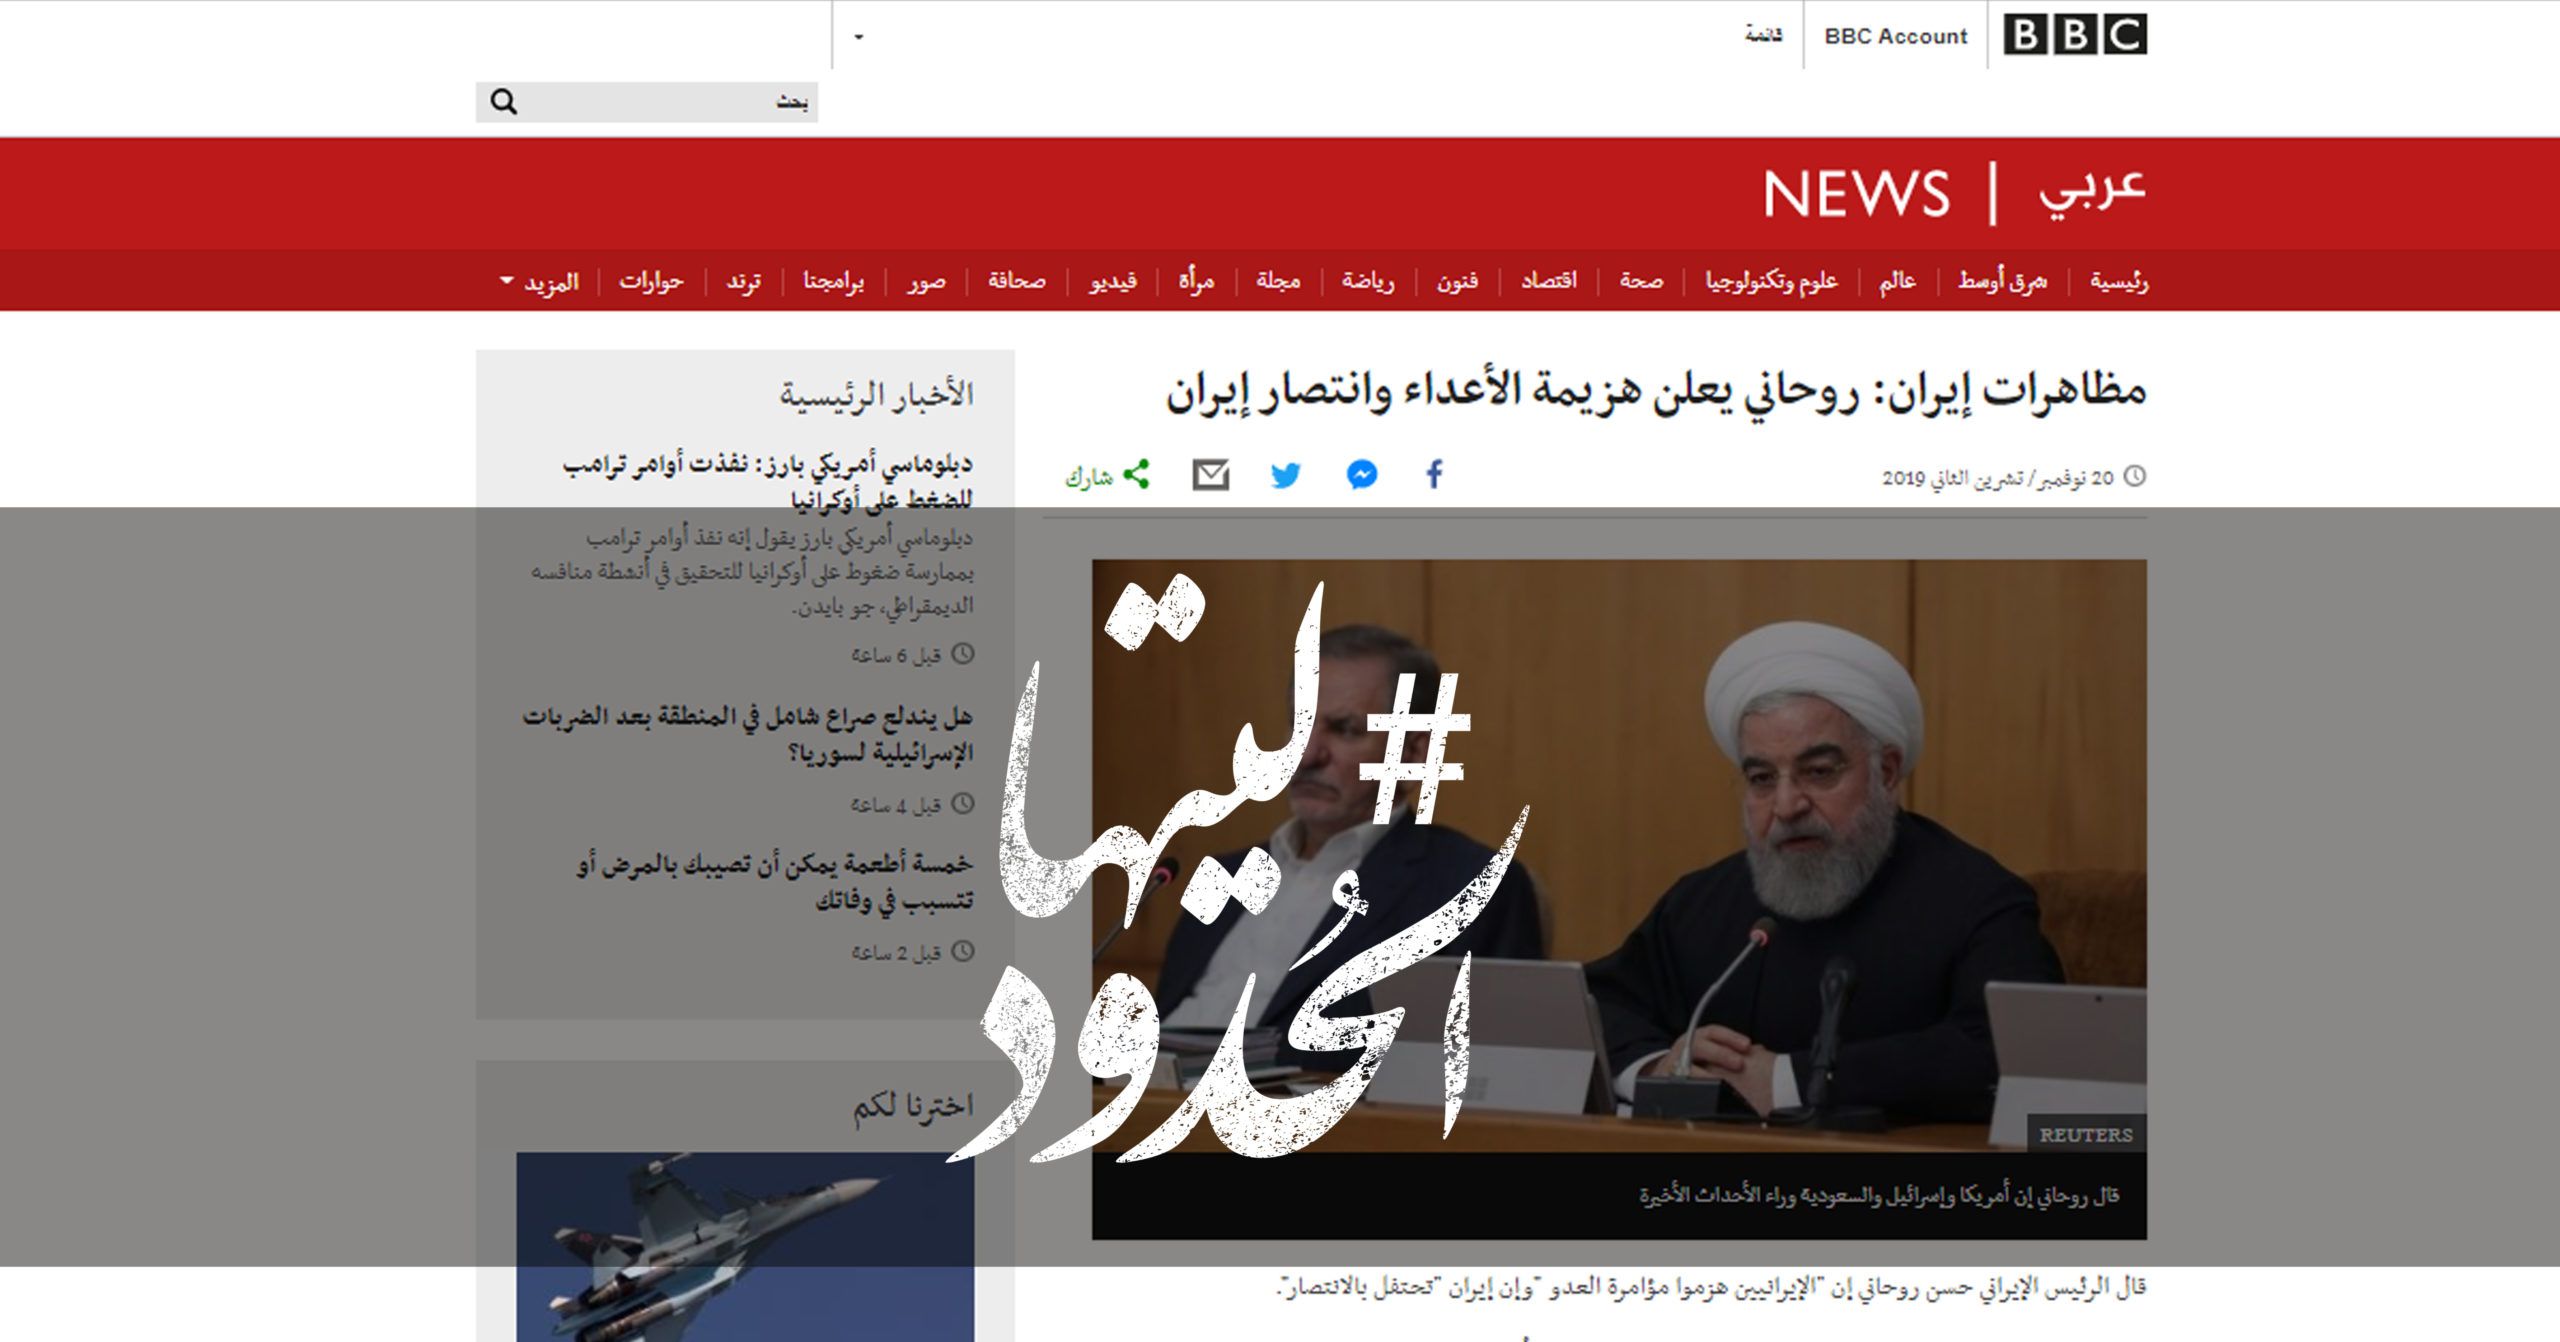 صورة مظاهرات إيران: روحاني يعلن هزيمة الأعداء وانتصار إيران